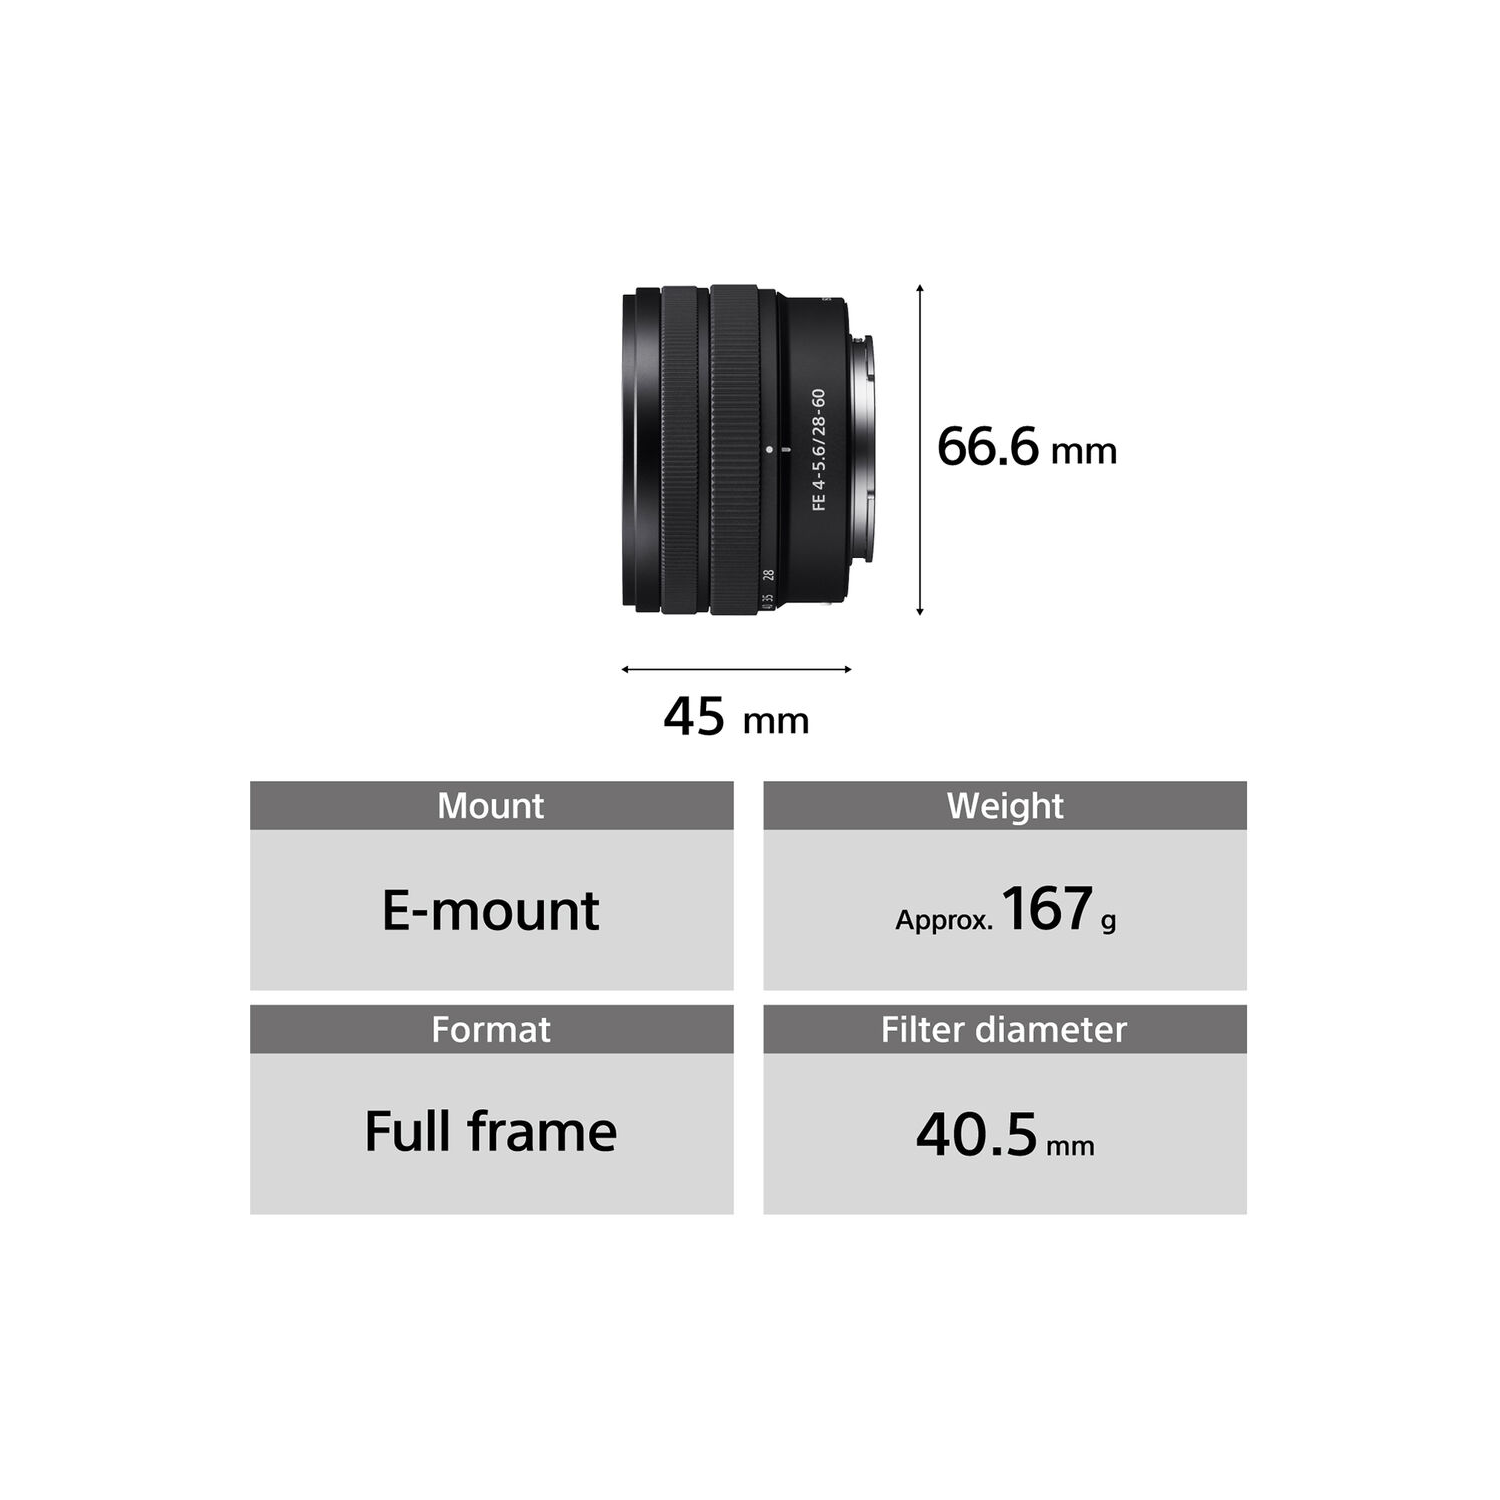 Sony FE 28-60mm F4-5.6 Full-frame Compact Zoom Lens SEL2860